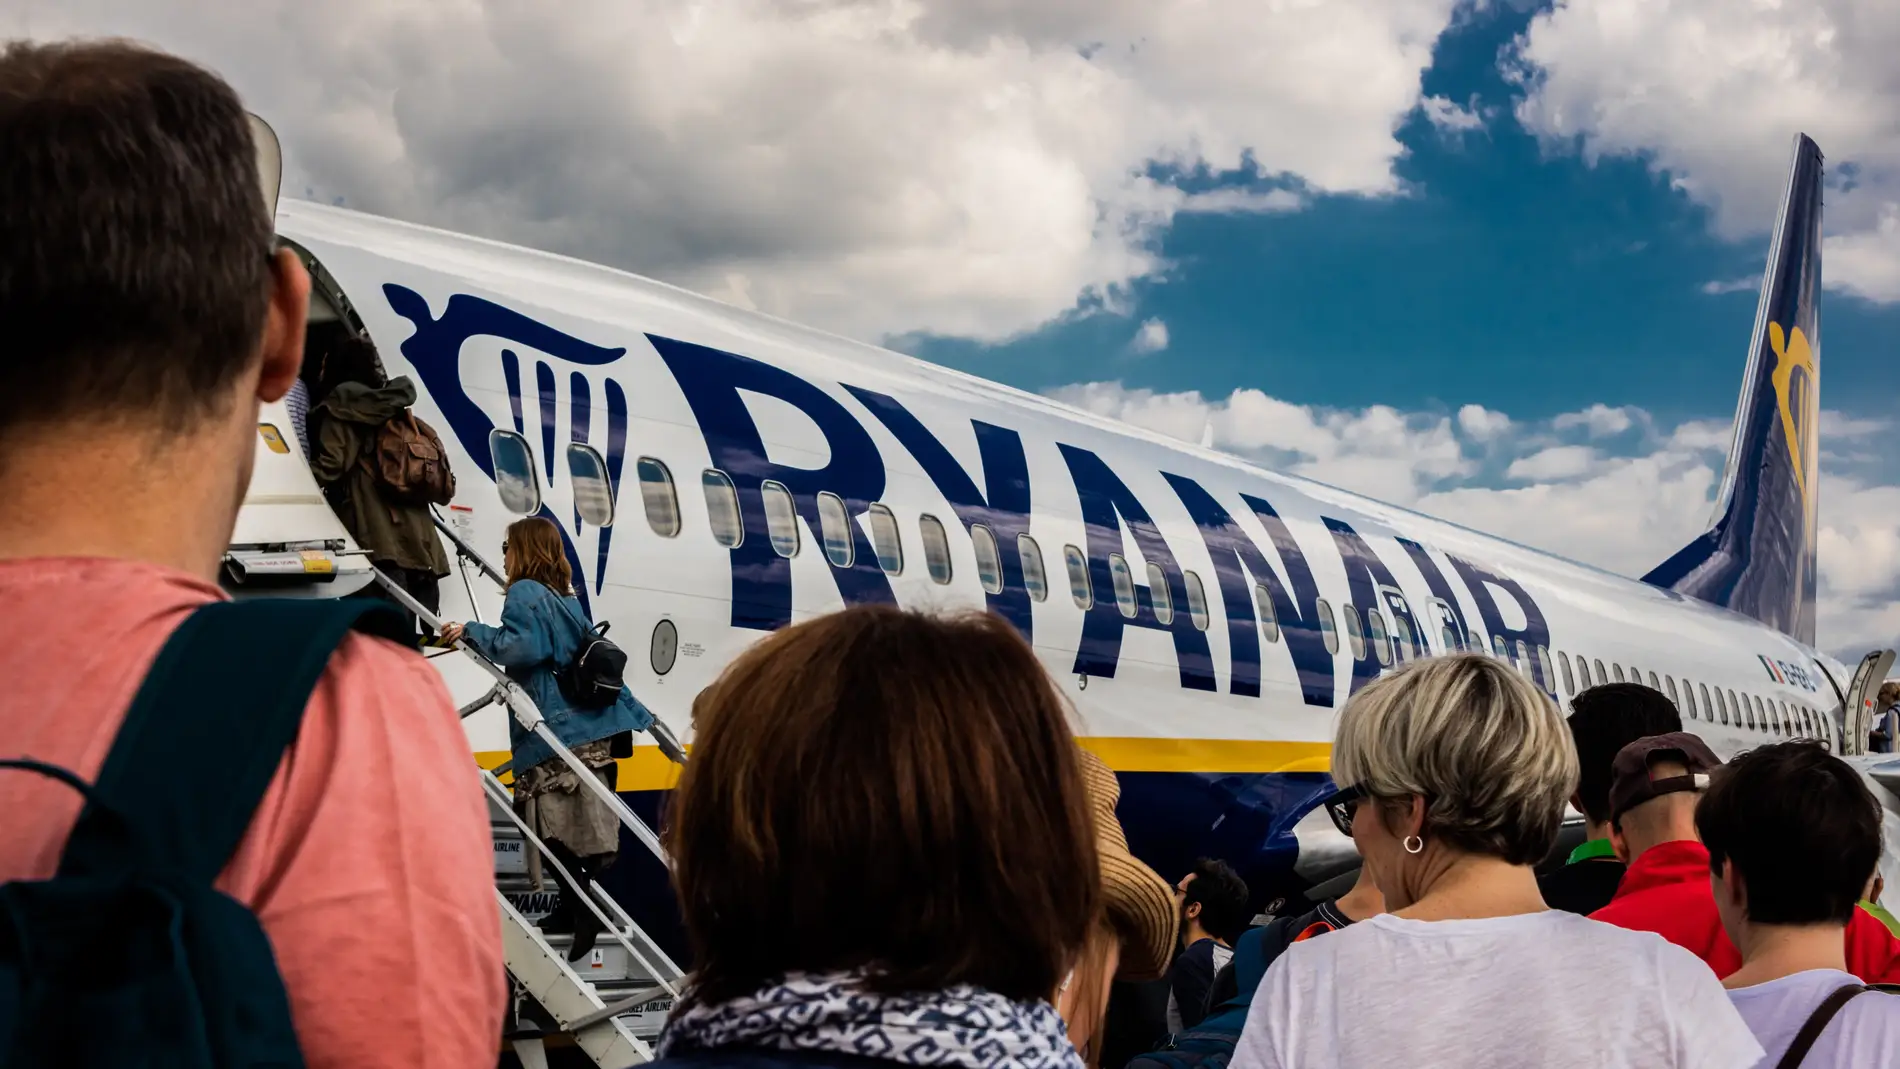 Pasajeros embarcan en un avión de la compañía irlandesa Ryanair, en una imagen de archivo/ Unsplash